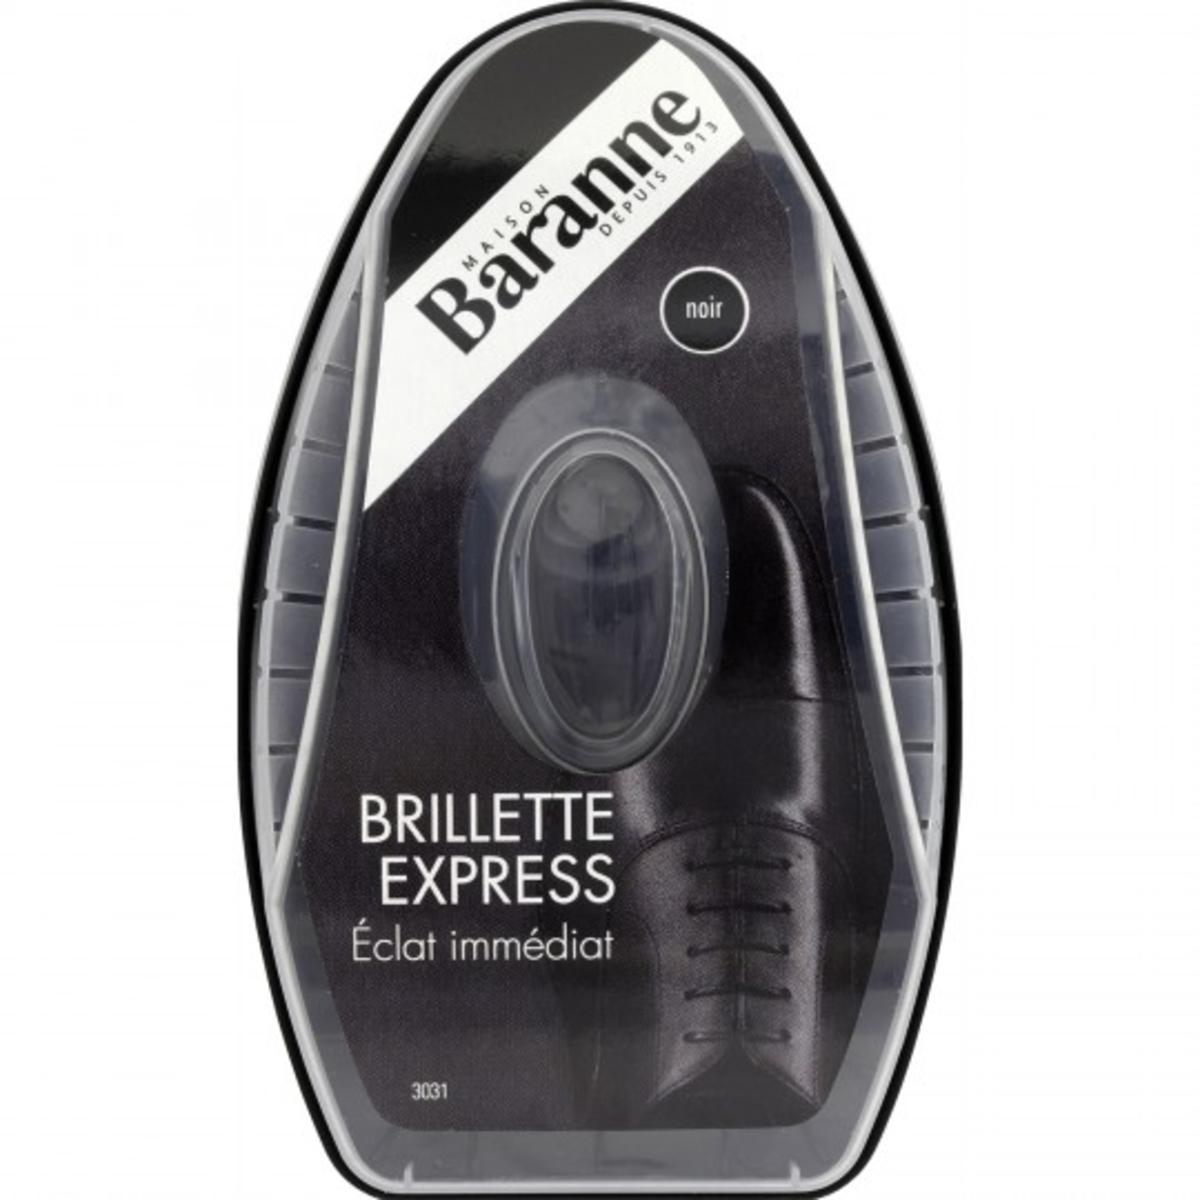 Brillette Baranne - Multicolore - BARANNE